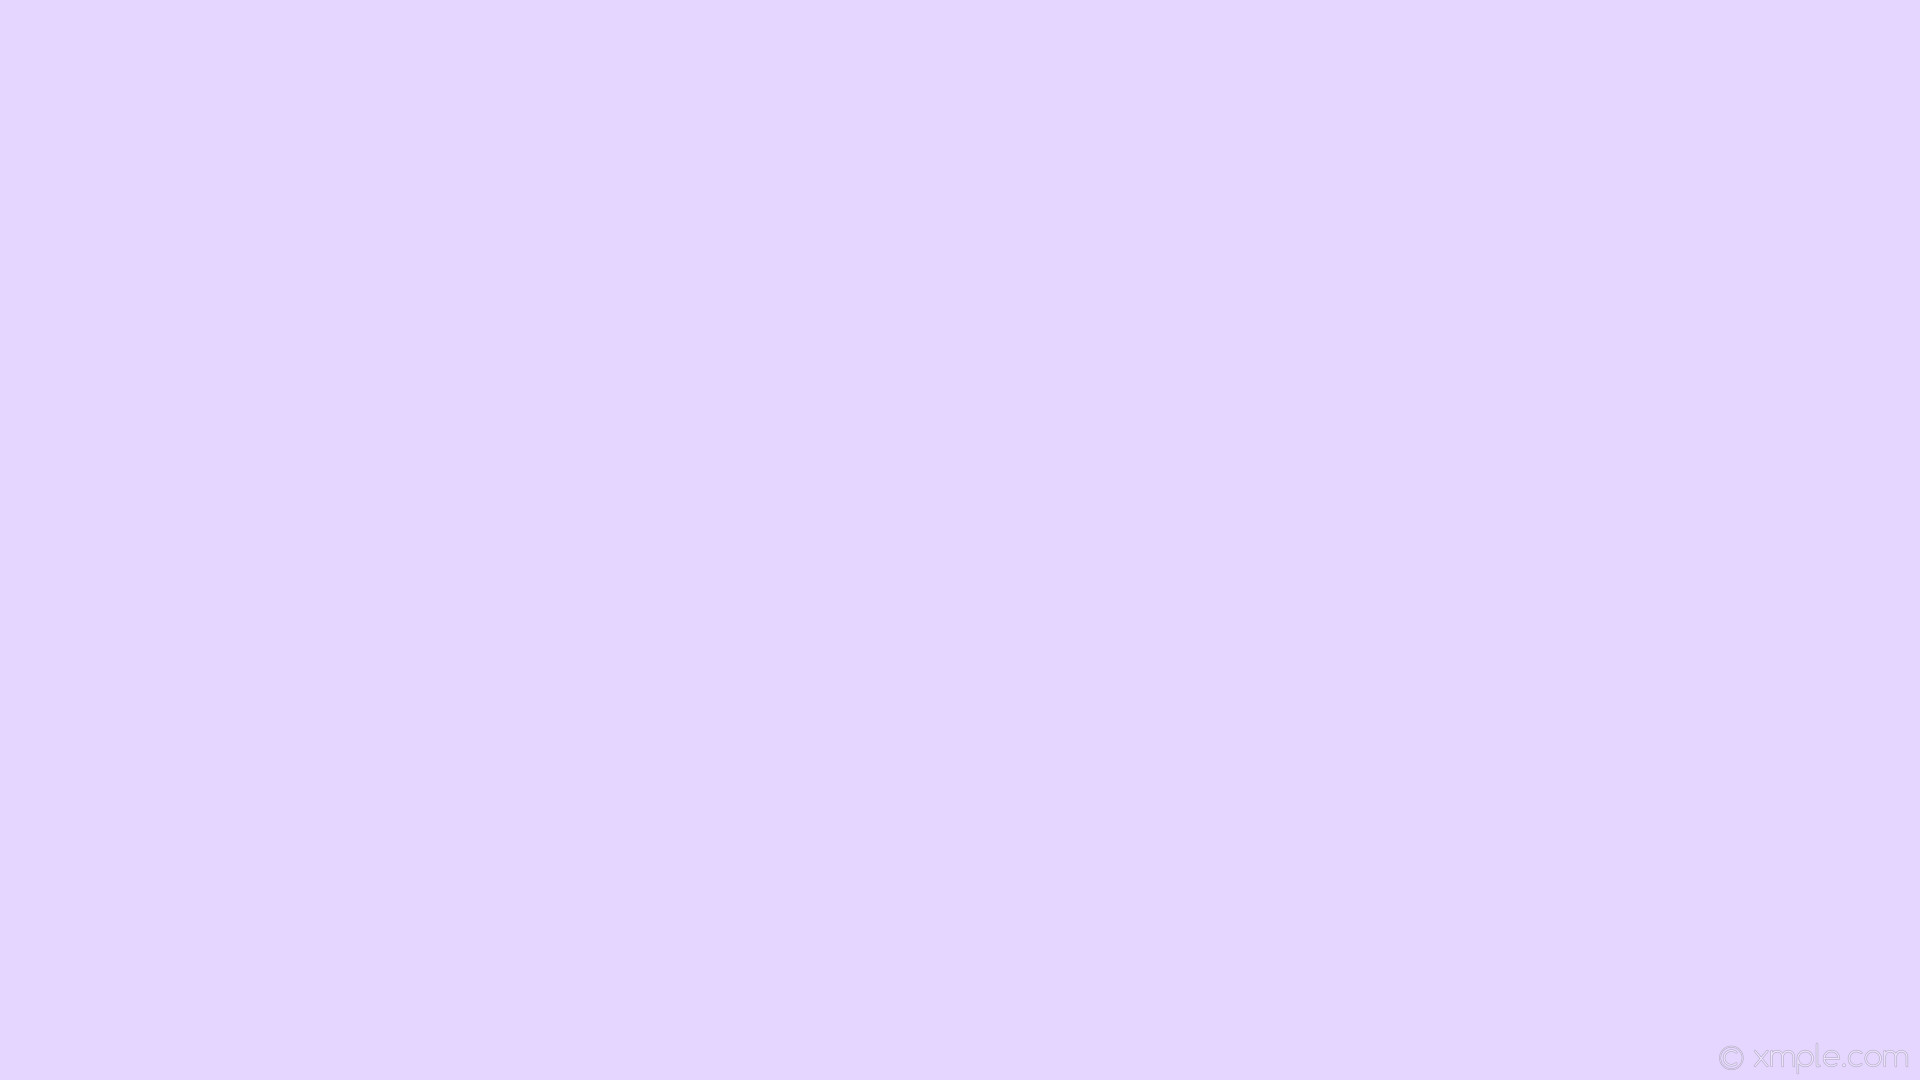 1920x1080 wallpaper solid color one colour single violet plain light violet #e4d6fe